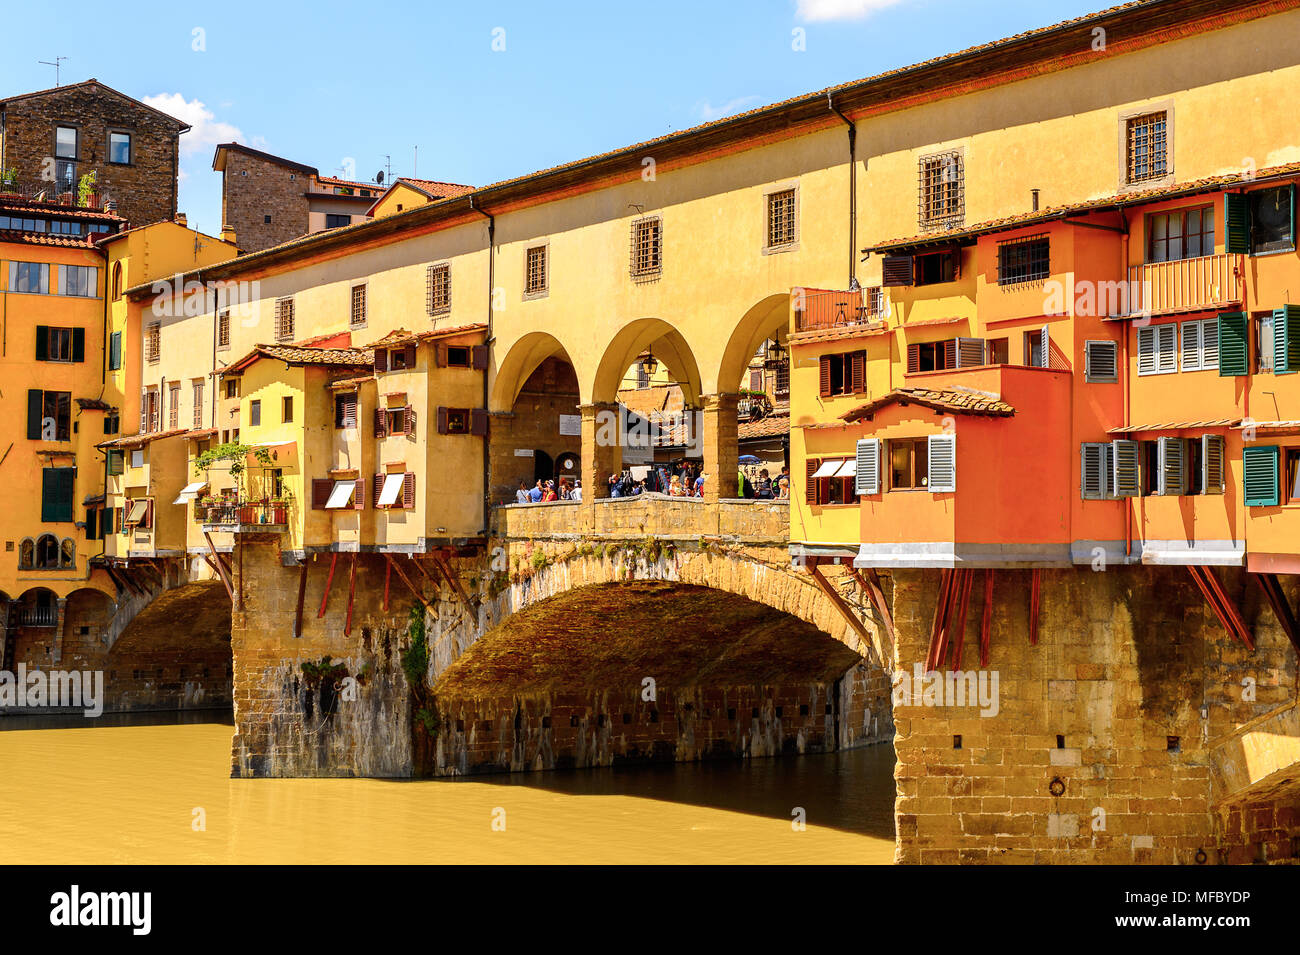 Ponte Vecchio (Alte Brücke), eine mittelalterliche Stein geschlossen - brüstungs Segmentbogen Brücke über den Fluss Arno in Florenz, Italien. Stockfoto